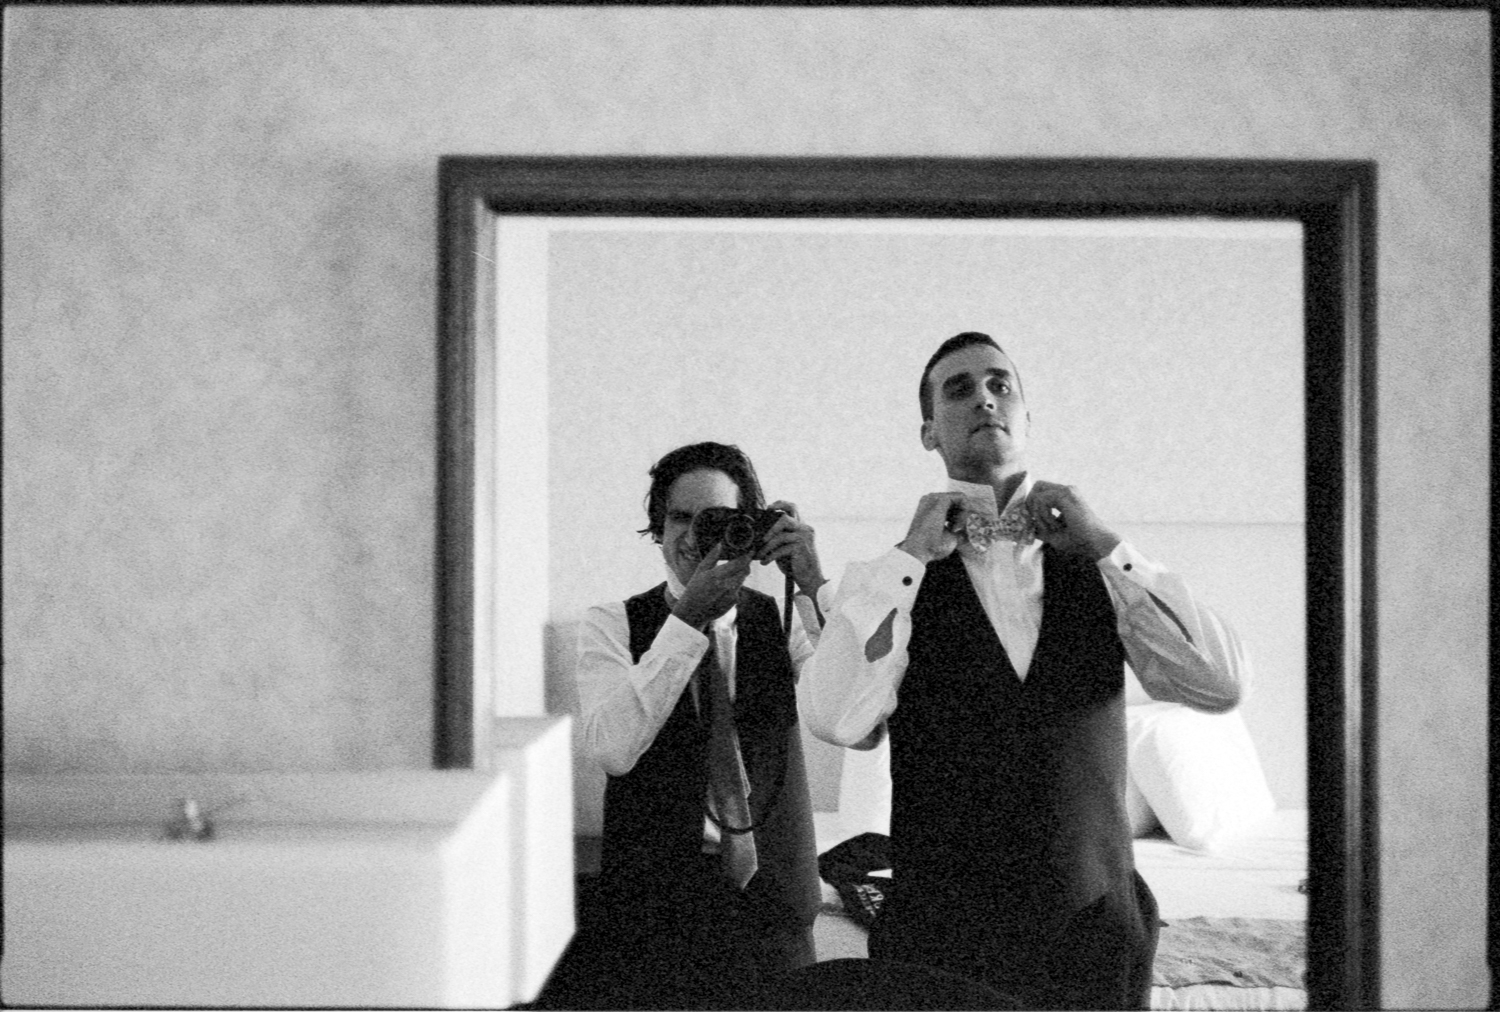 Sam + Greg 35mm Leica-9.jpg